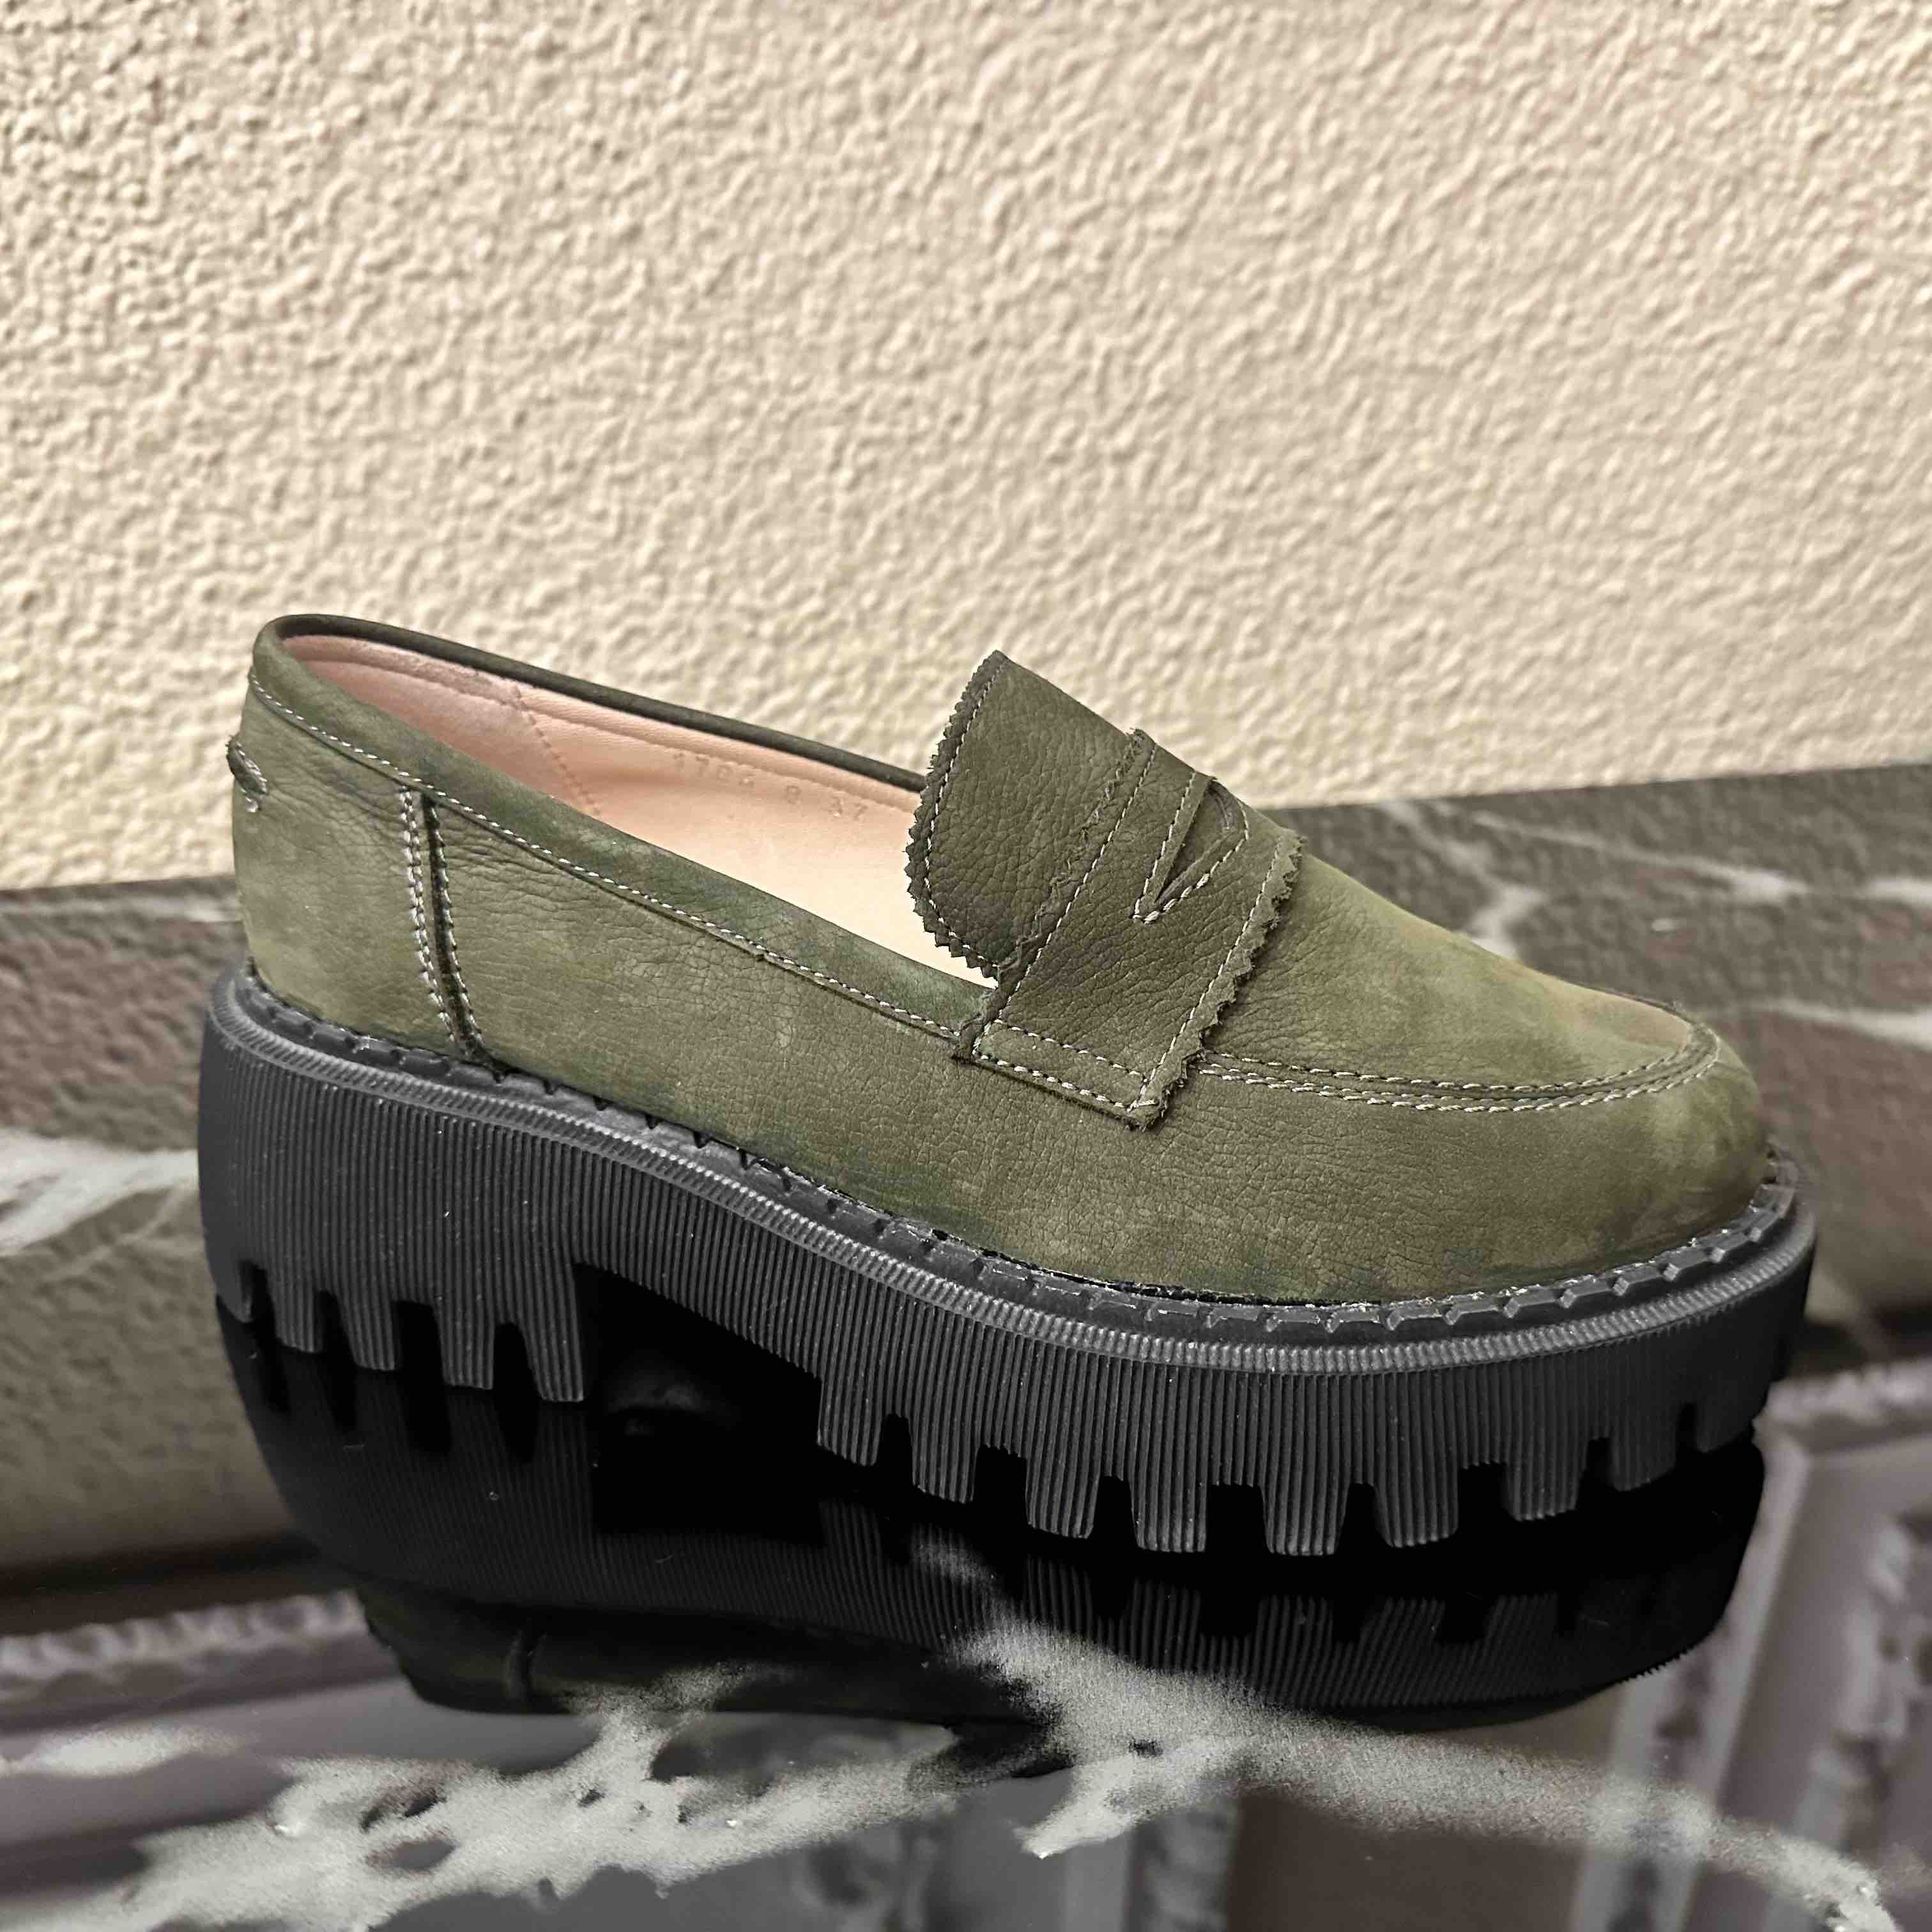 Moderna ženska cipela od zelene nubuk kože